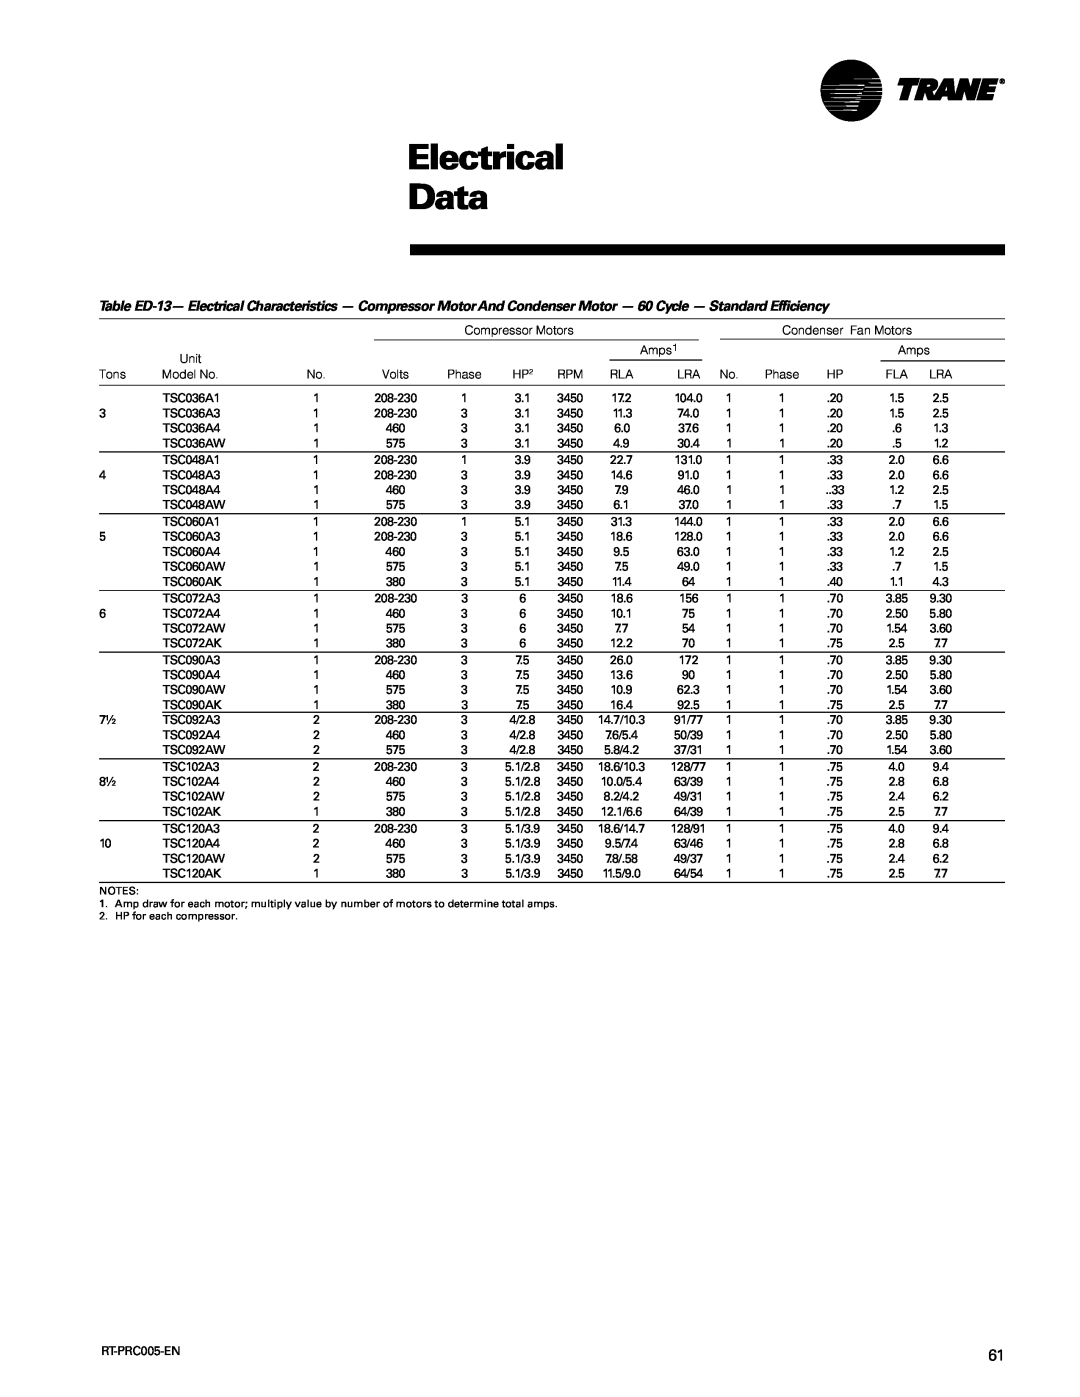 Trane RT-PRC005 manual Electrical Data, TSC036A1 